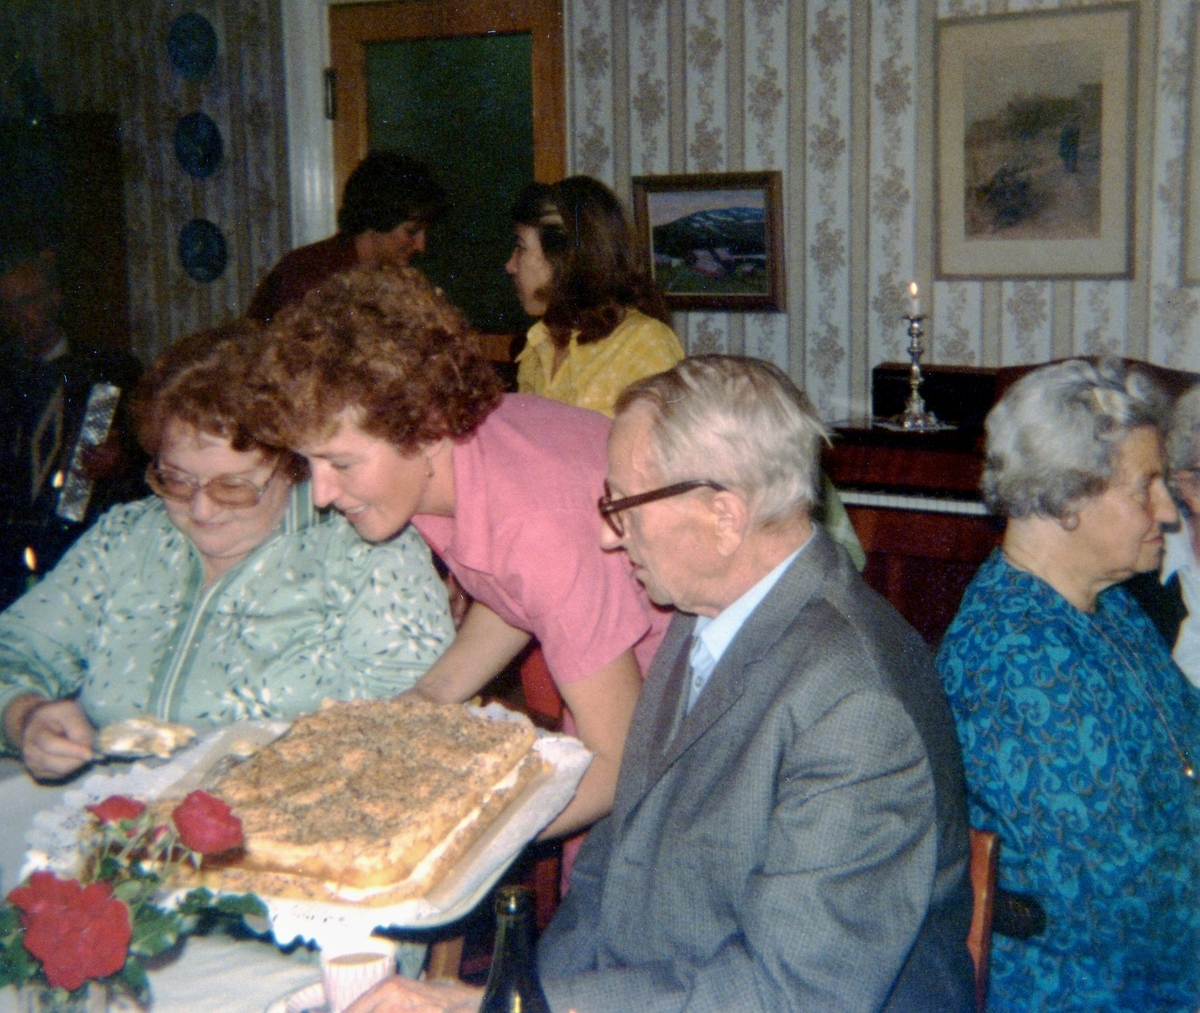 Kokerskan Ingela Sjöberg serverar tårta under en anhörigträff på Brattåshemmet 1979. Från vänster ses Gunvor Olsson (anhörig), Ingela Sjöberg samt Per Pettersson. Relaterat motiv: A1889.